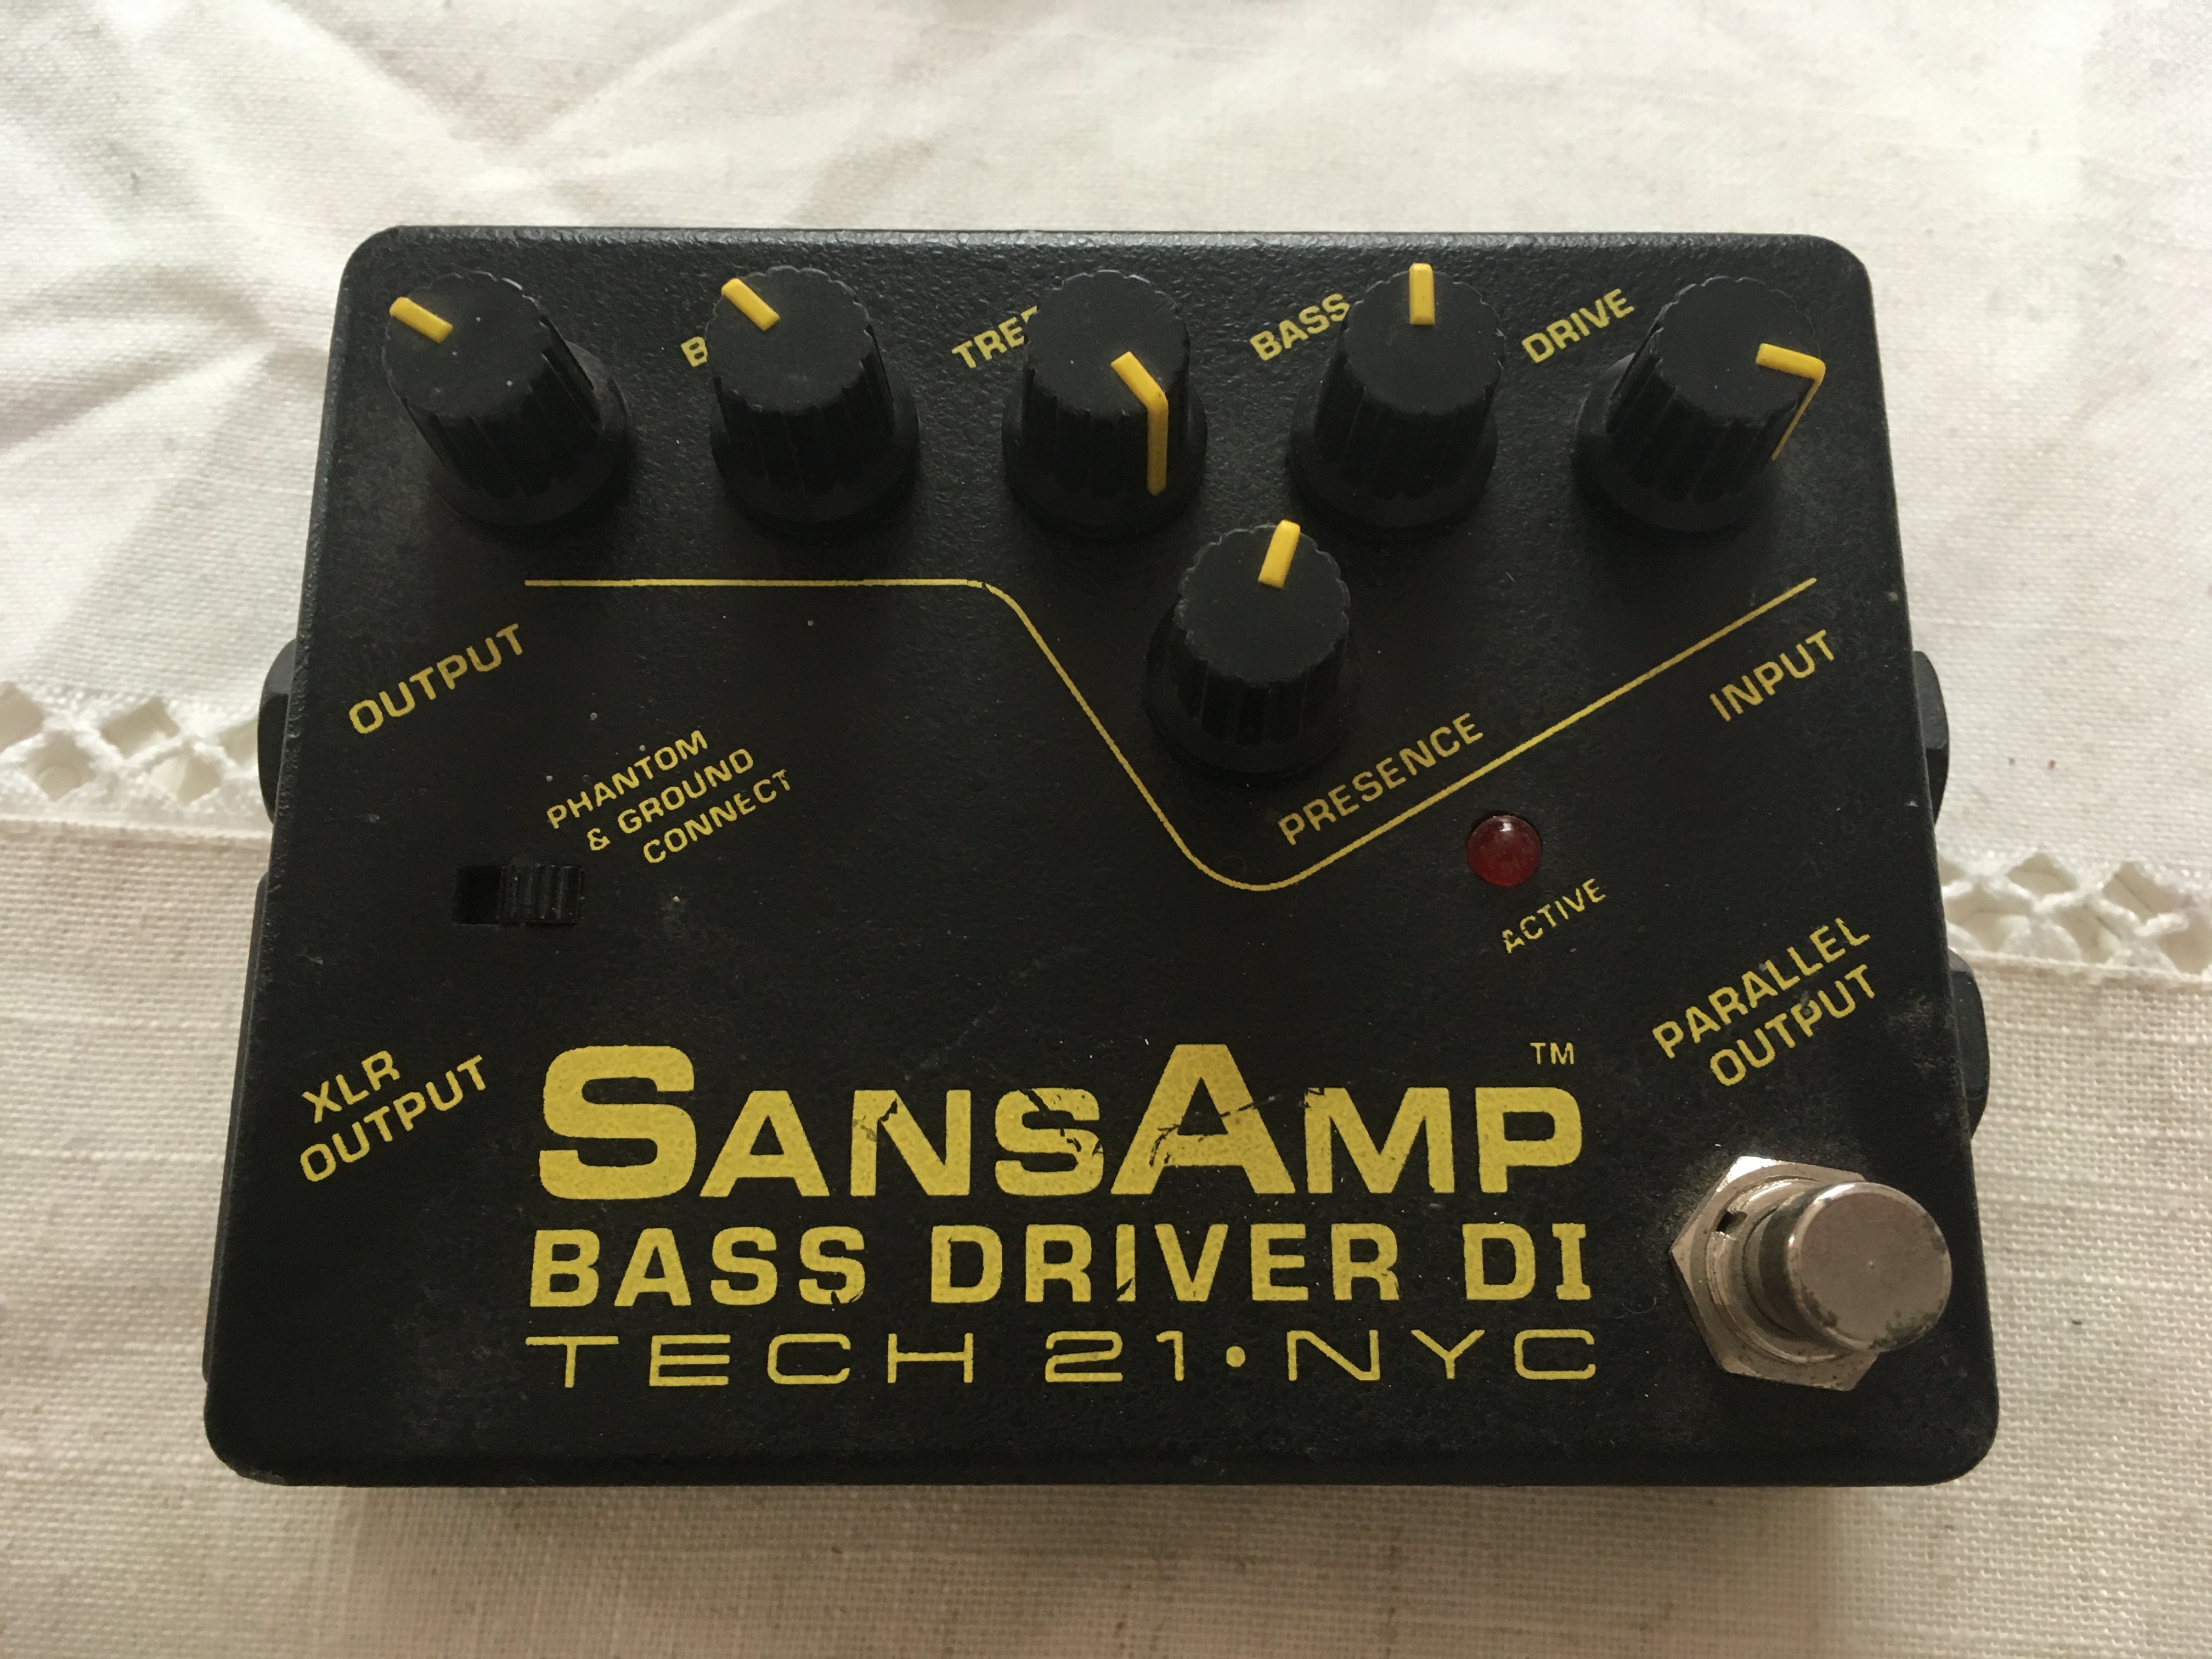 SansAmp Bass Driver DI - Tech 21 SansAmp Bass Driver DI - Audiofanzine